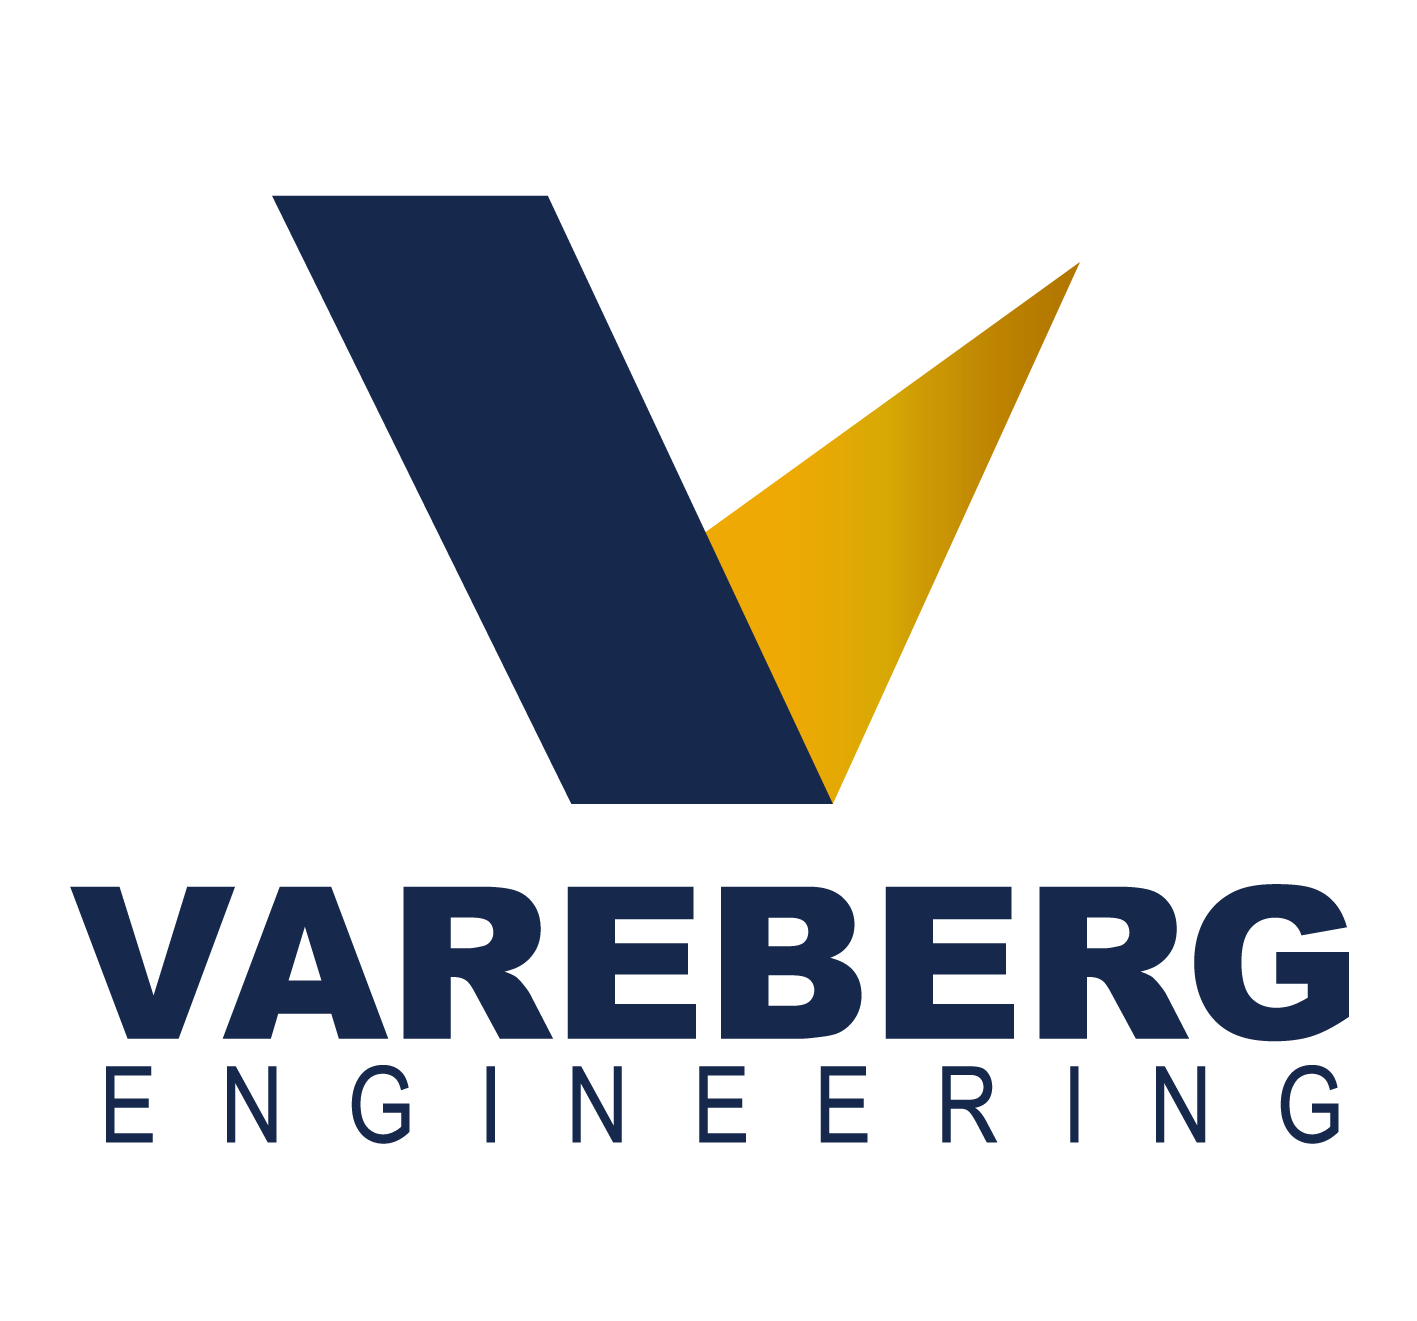 Vareberg Engineering